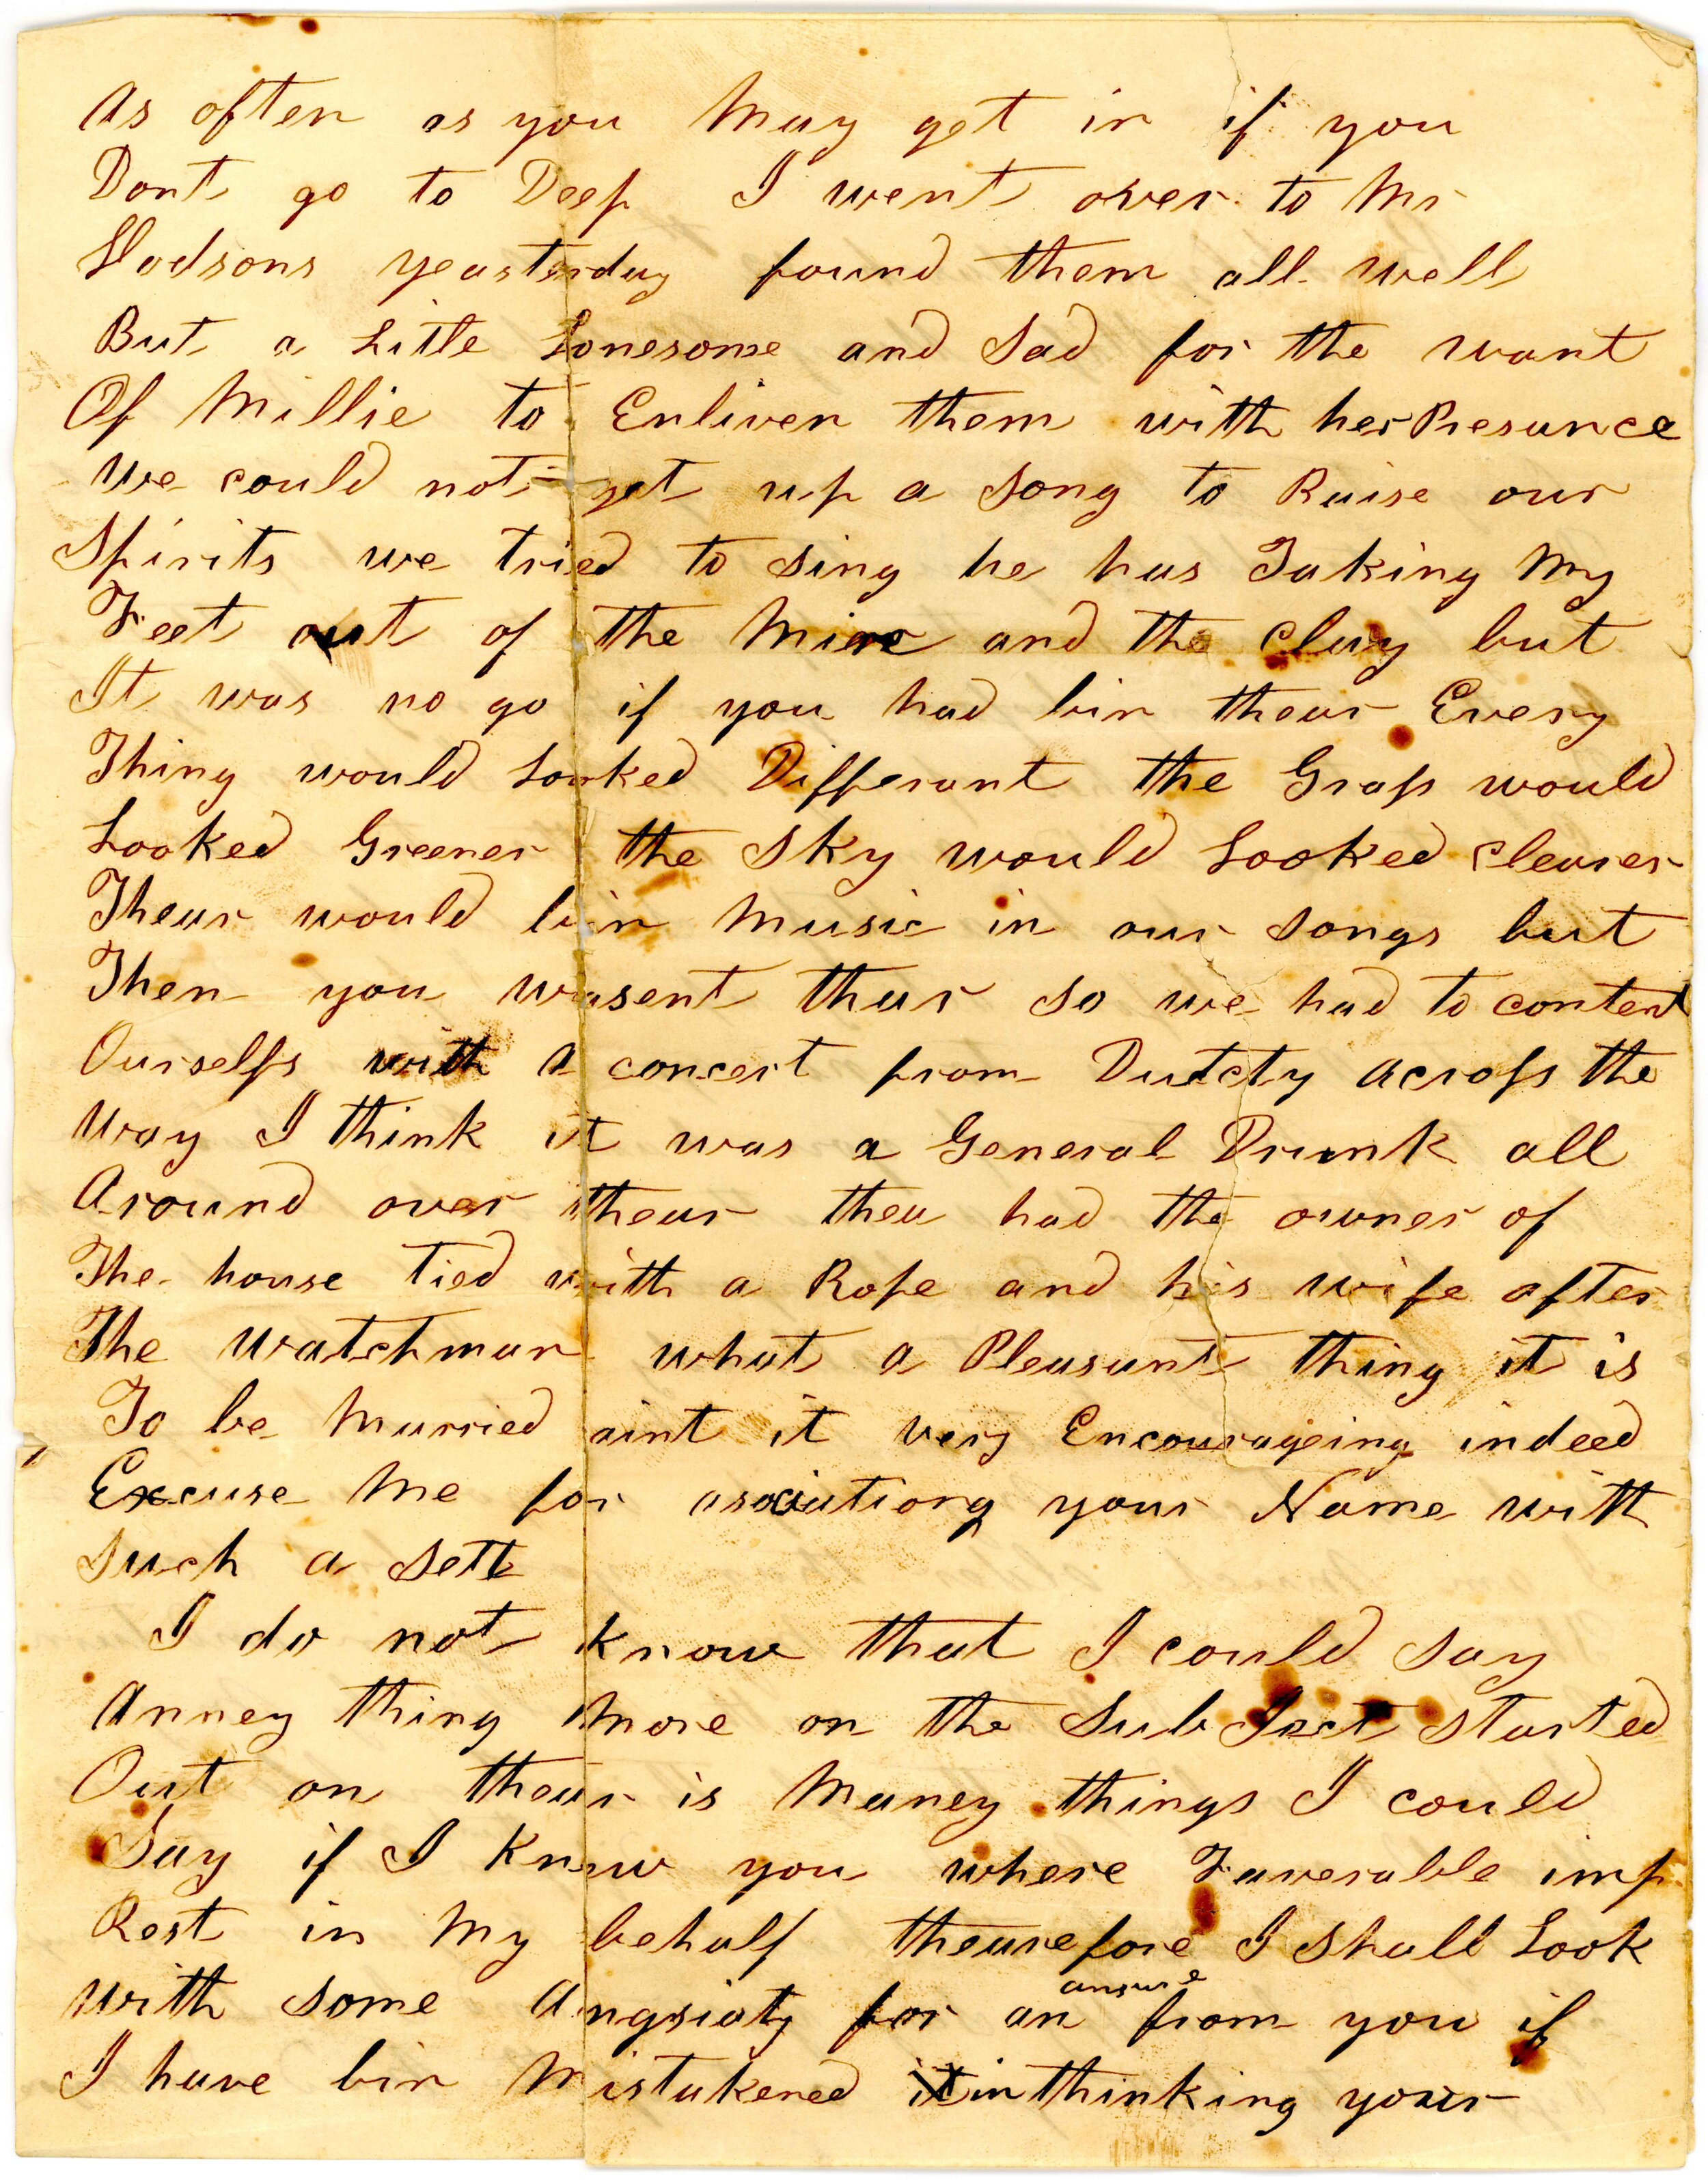 Letter-01_1860-03-12_Brooklyn-Kentucky_letter_page-2.JPG